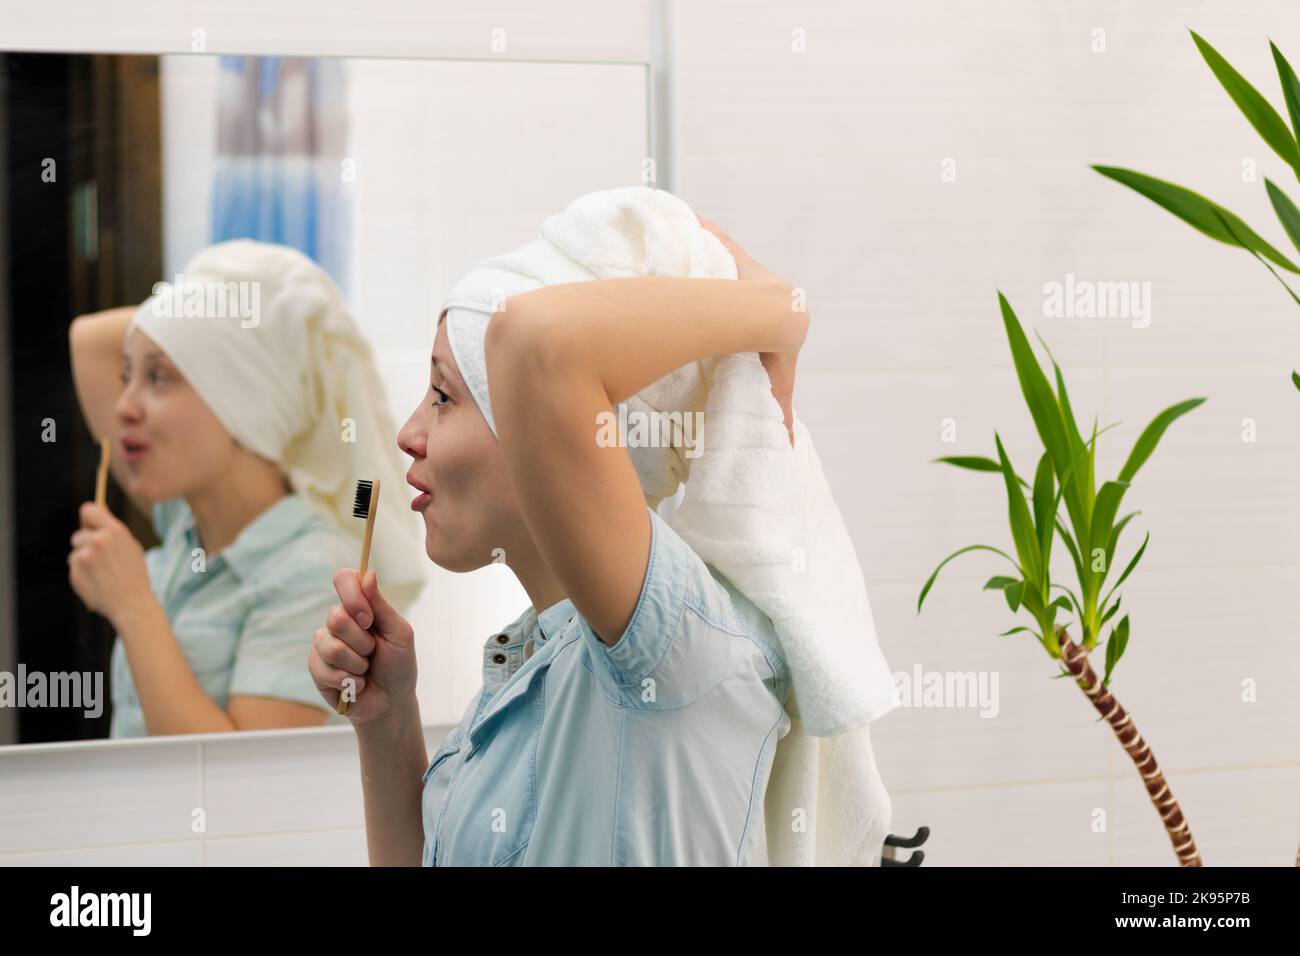 Eine junge hübsche Frau in einem blauen Bademantel mit einem Handtuch auf dem Kopf in einem hellen Badezimmer mit einer Zahnbürste in der Hand singt Lieder. Reflexion im mir Stockfoto